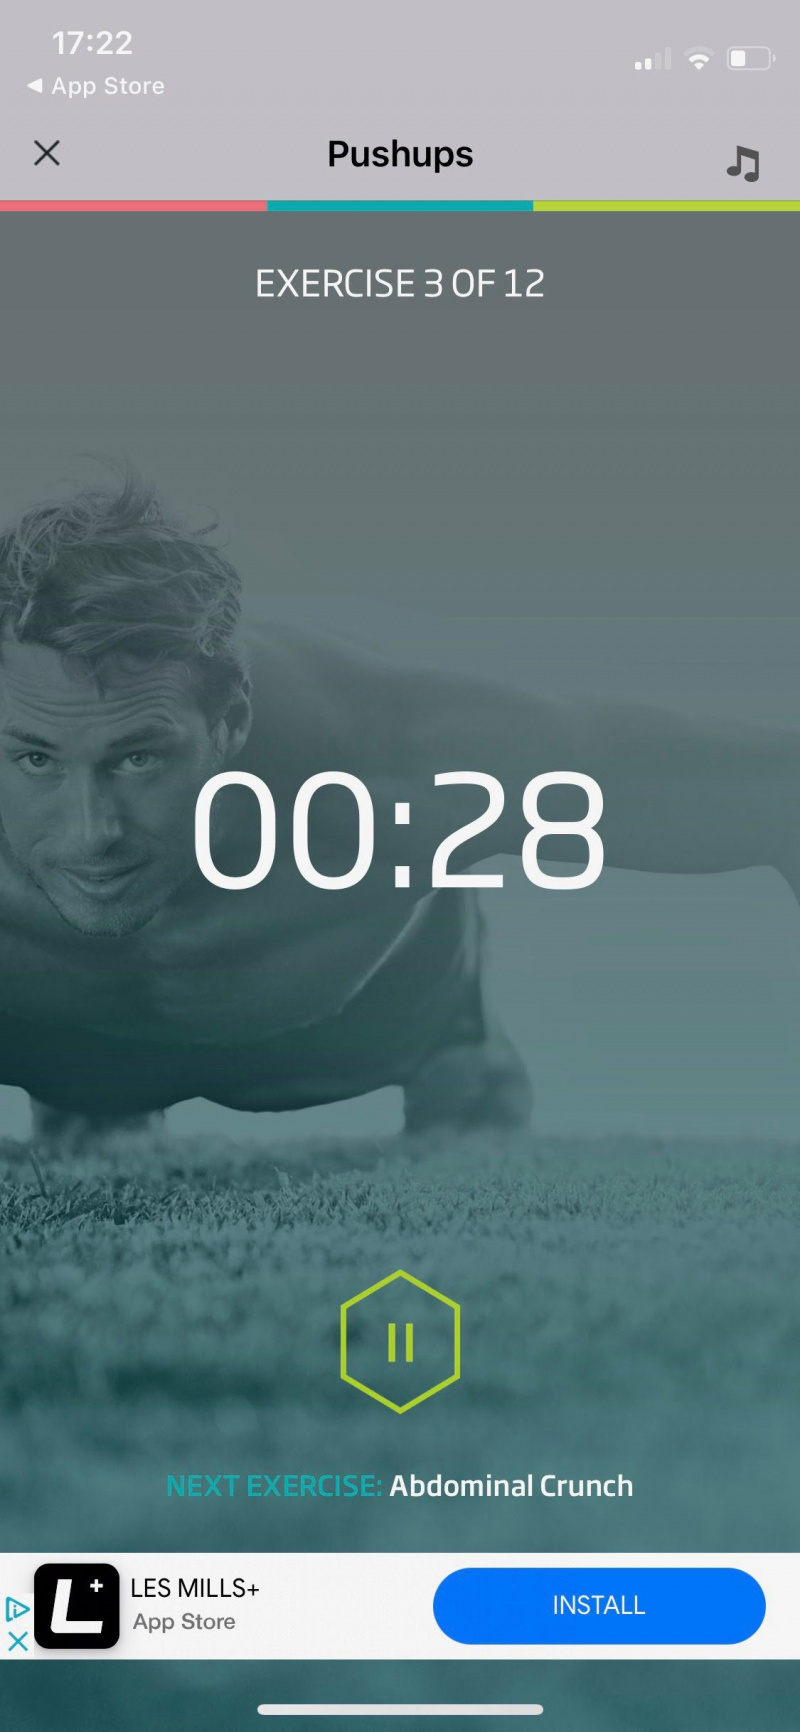   Snimka zaslona 7-minutnog vježbanja od strane C25K prikazuje zaslon vježbanja